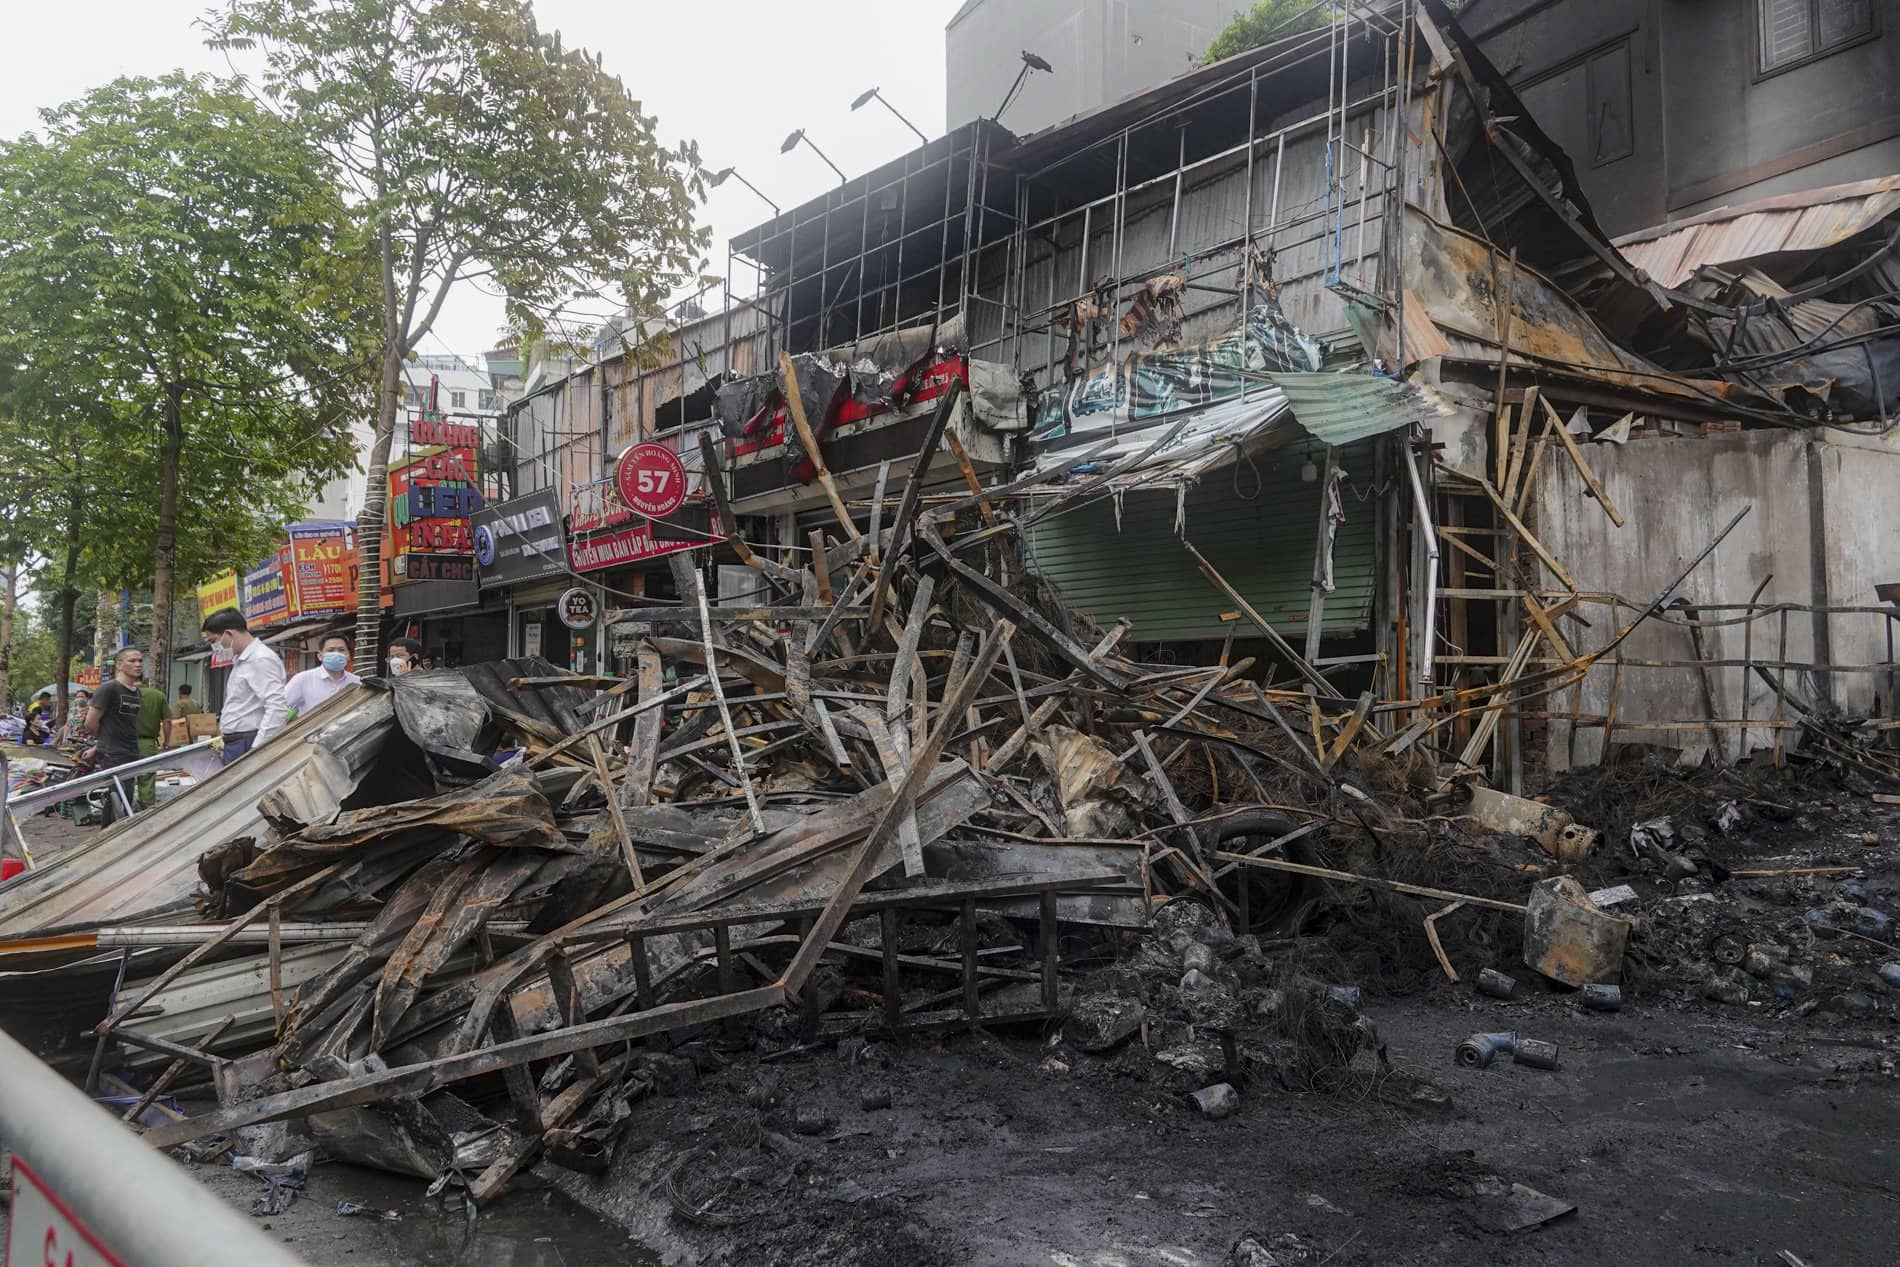 Hình ảnh tan hoang tại vụ cháy thiêu rụi gần chục ngôi nhà trên đường Nguyễn Hoàng, Hà Nội - Ảnh 2.